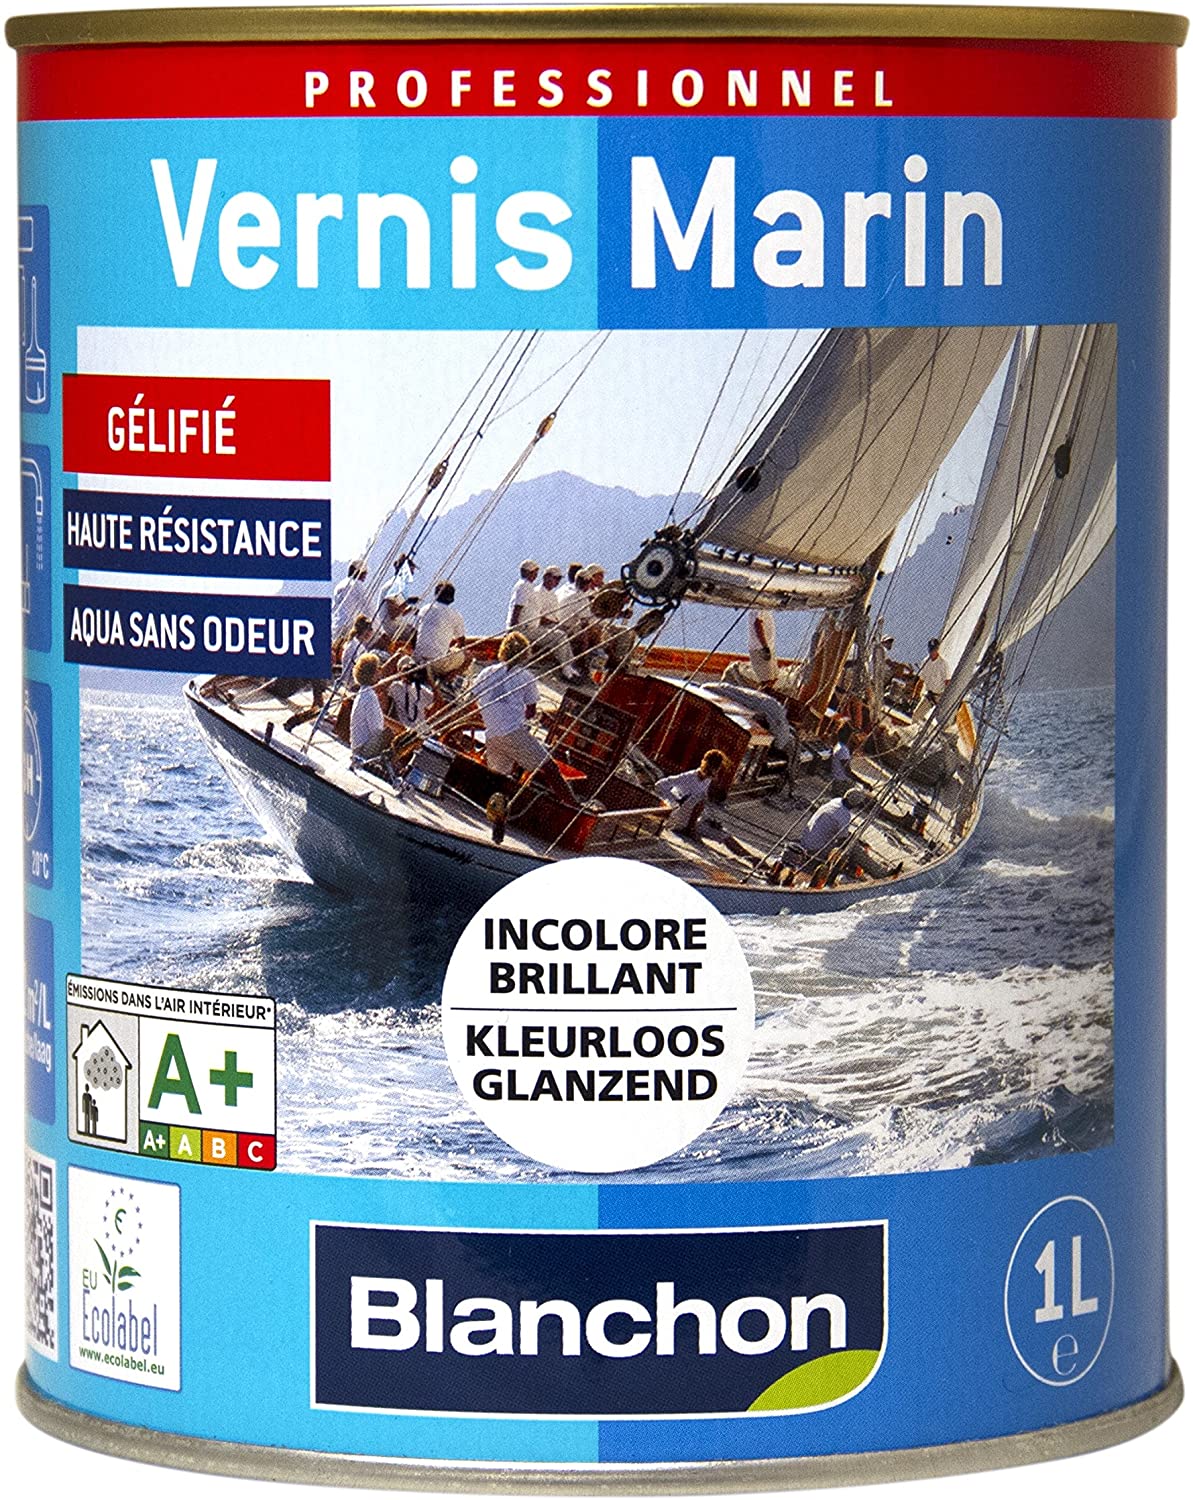 VERNIS MARIN 2.5L INCOLORE BRILLANT BLANCHON